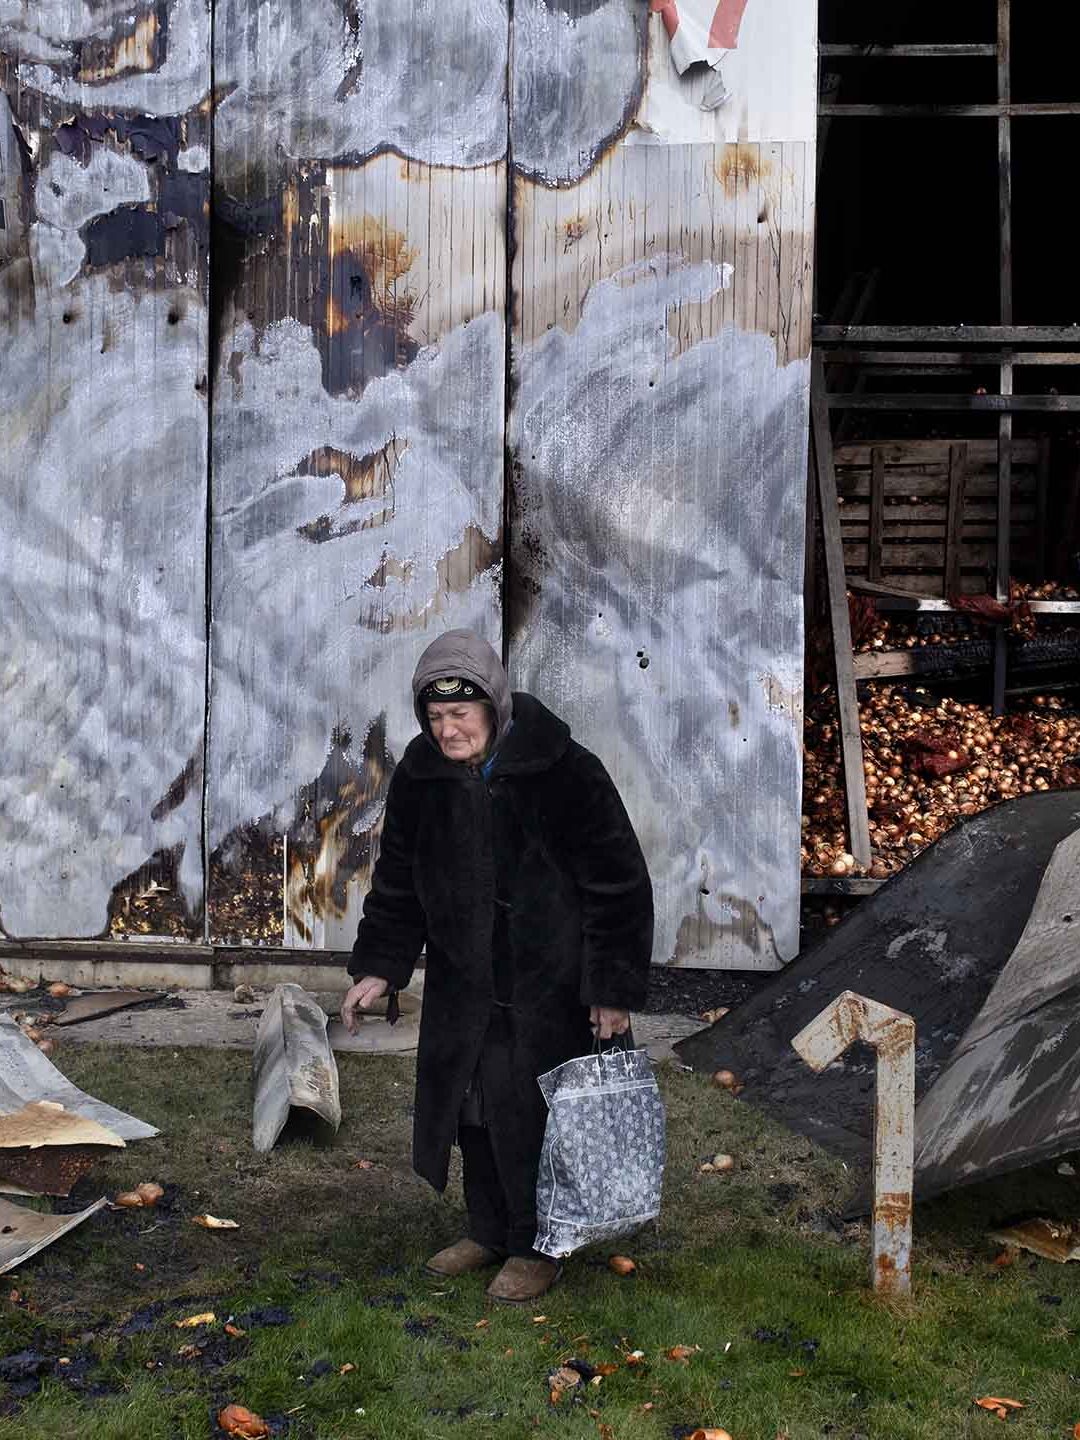 Ucraina: il conflitto avrà ripercussioni sulla sicurezza alimentare globale